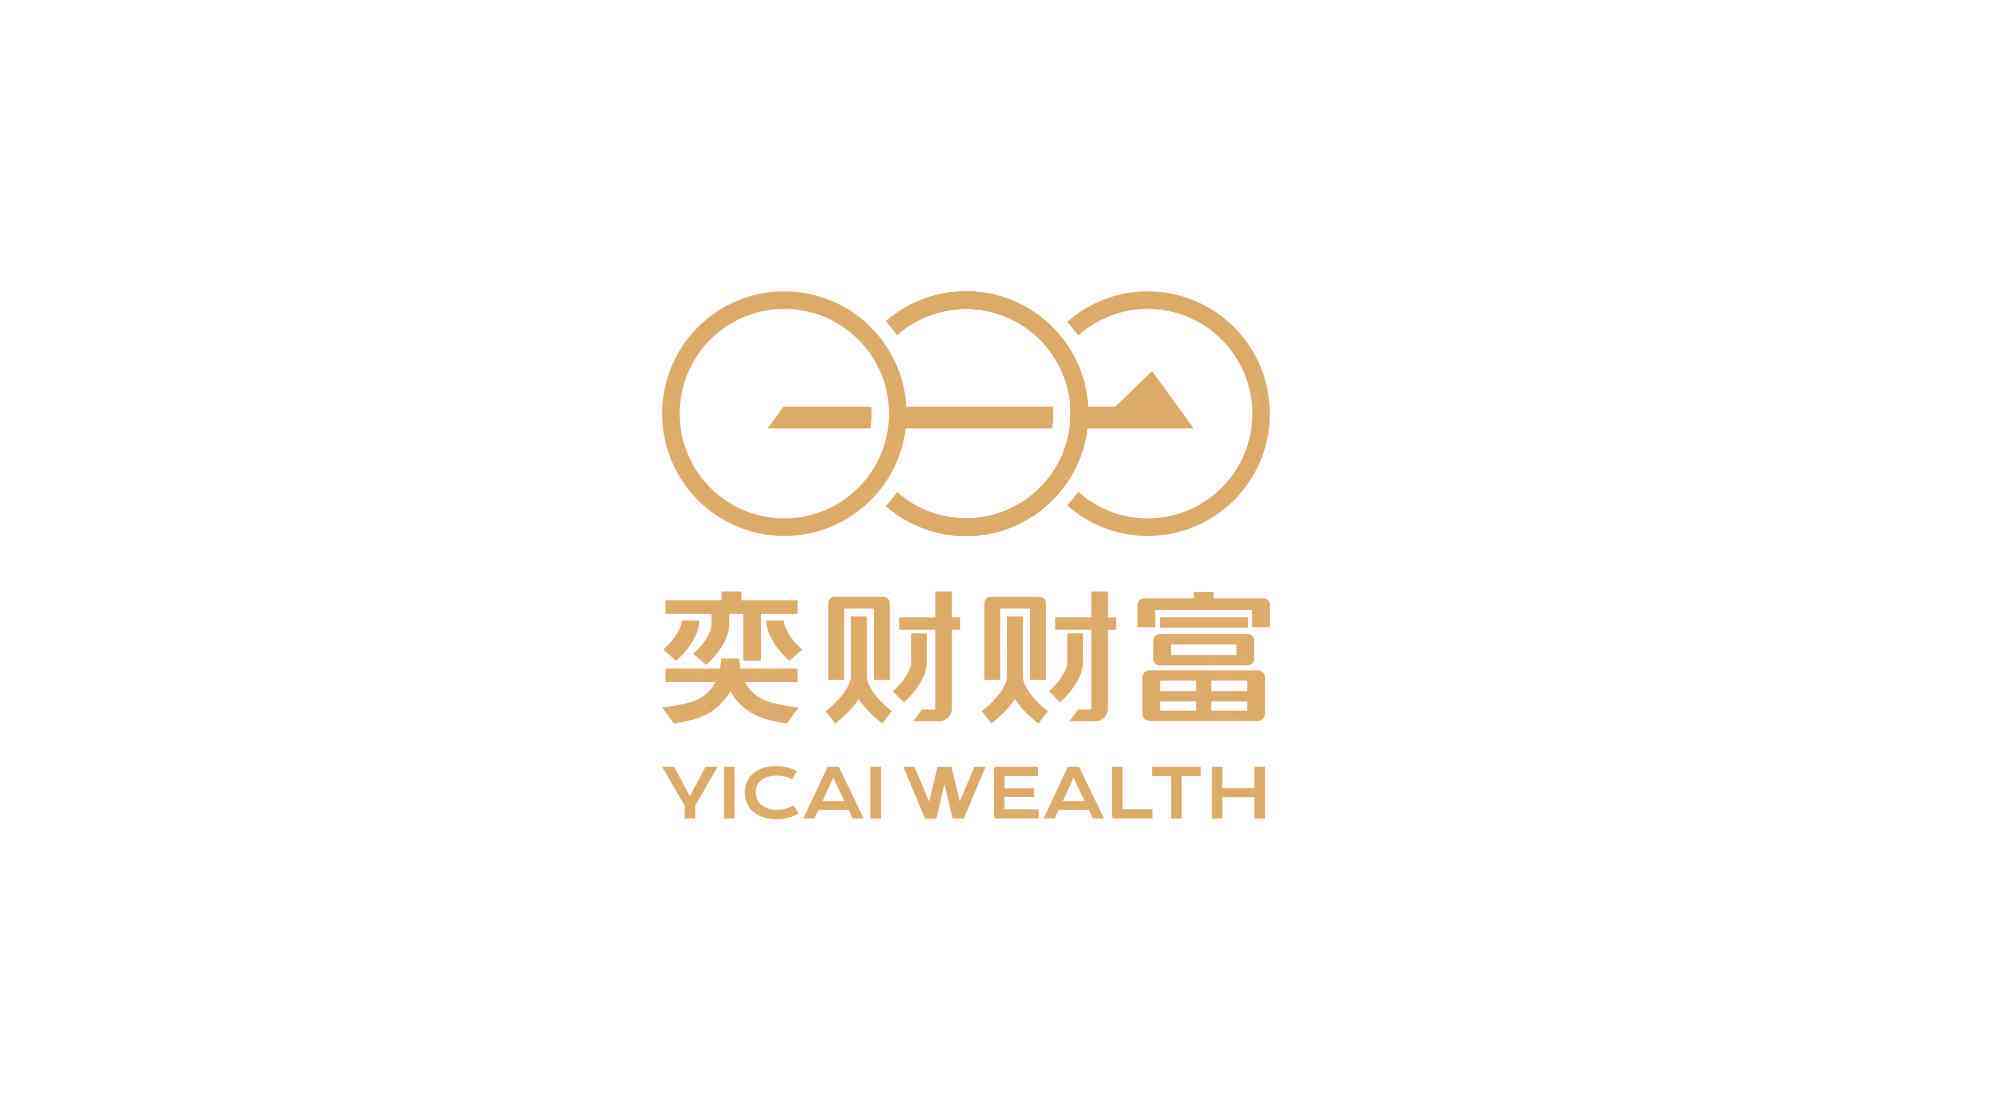 奕財財富投資公司logo設計圖片素材